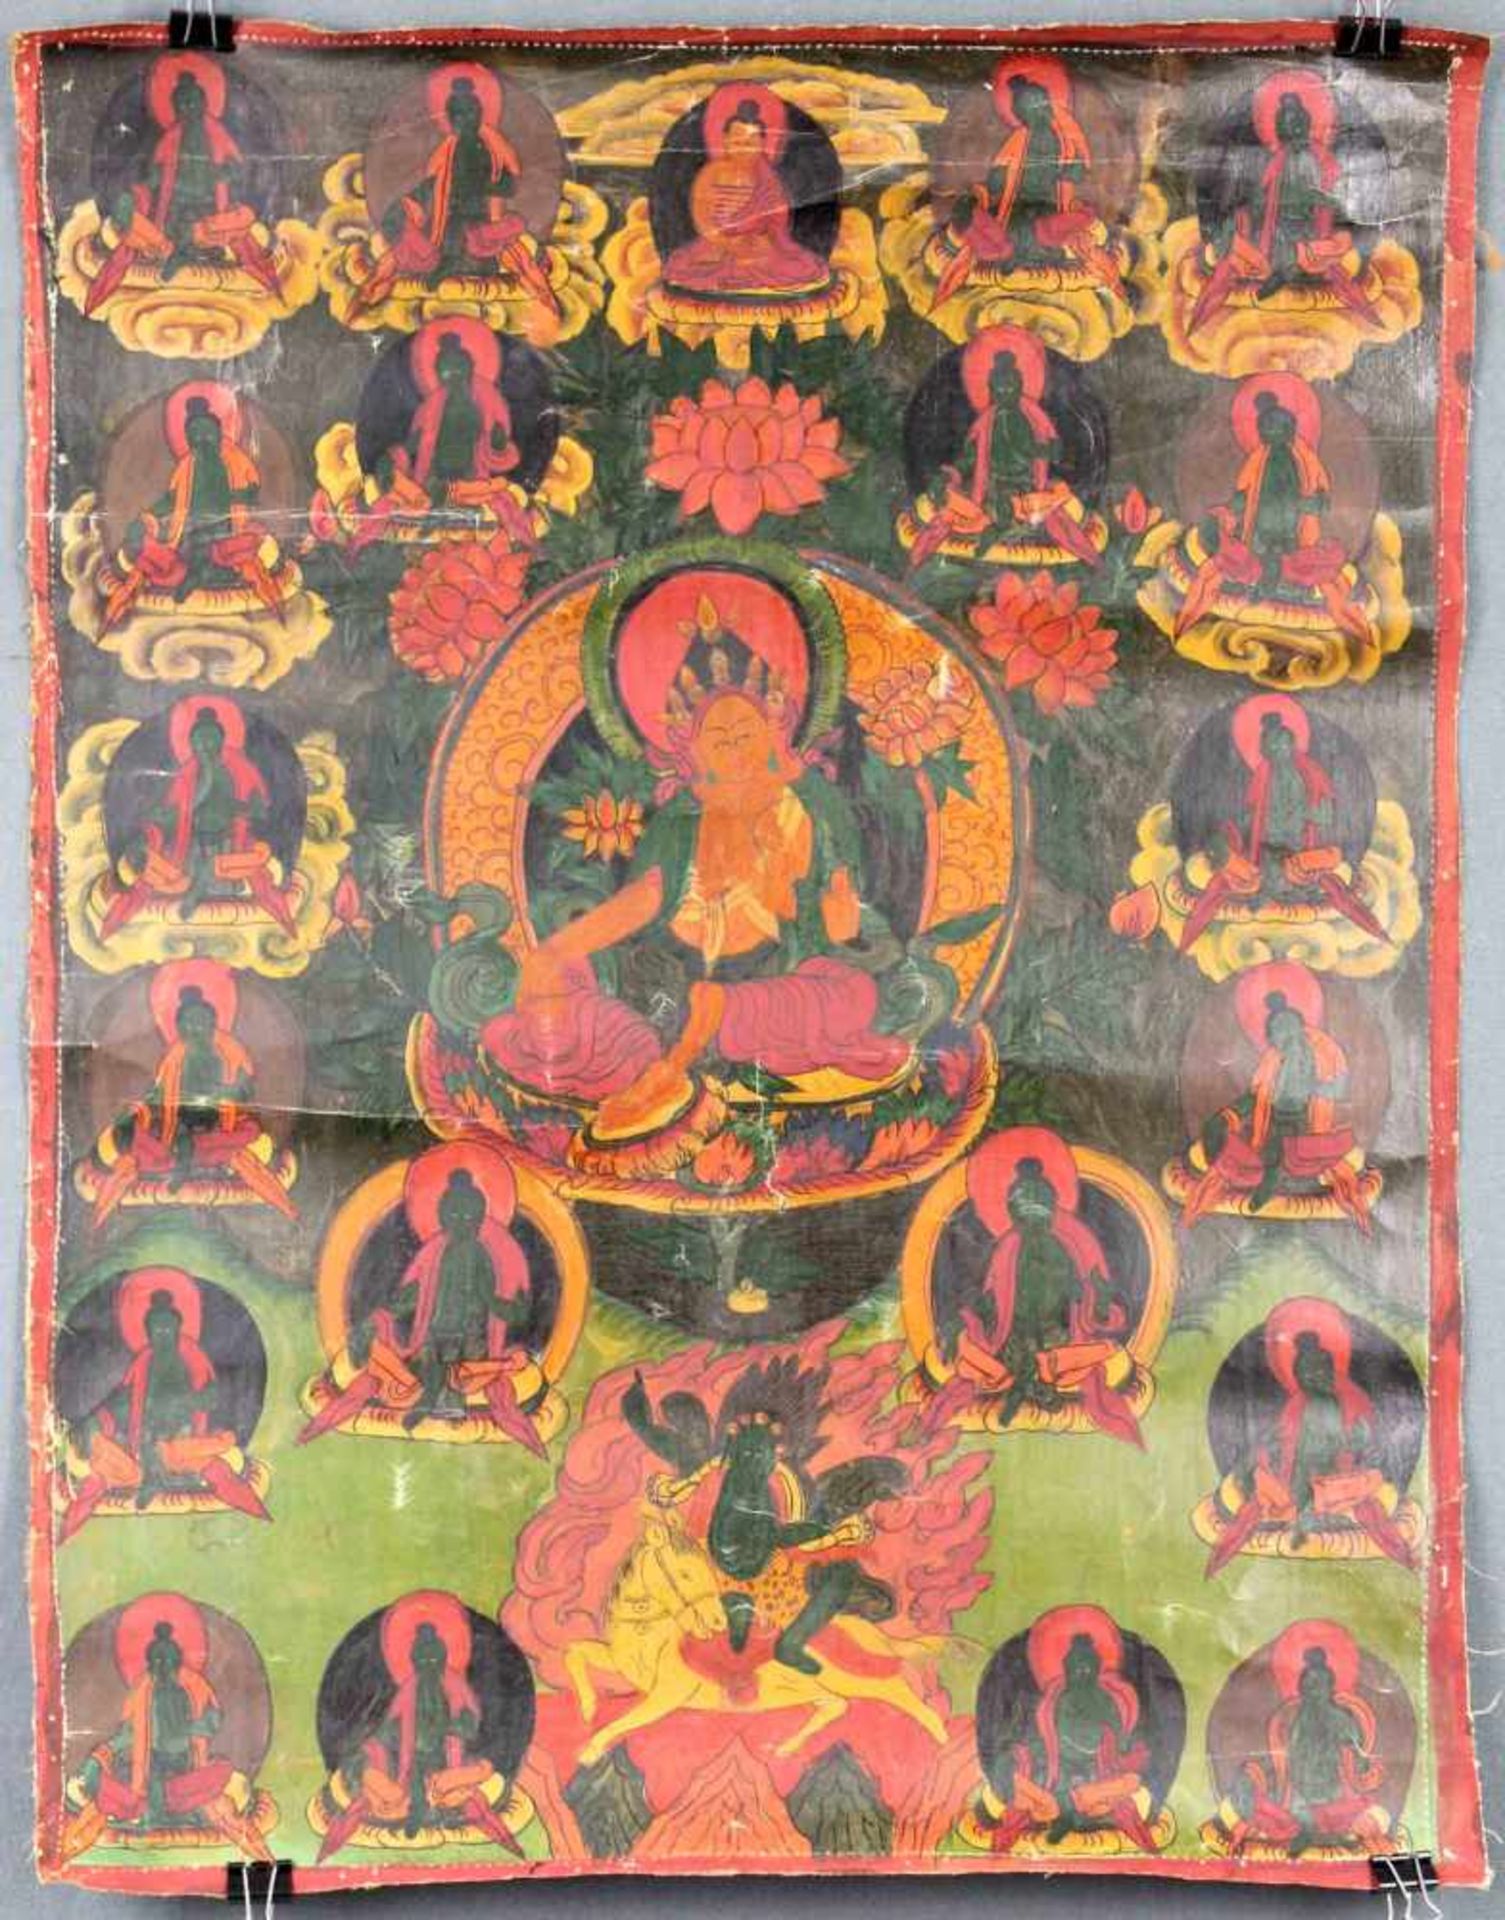 Tara auf Lotusthron. Thangka, China / Tibet alt.58 cm x 44,5 cm. Gemälde. Dargestellt, wie bei der